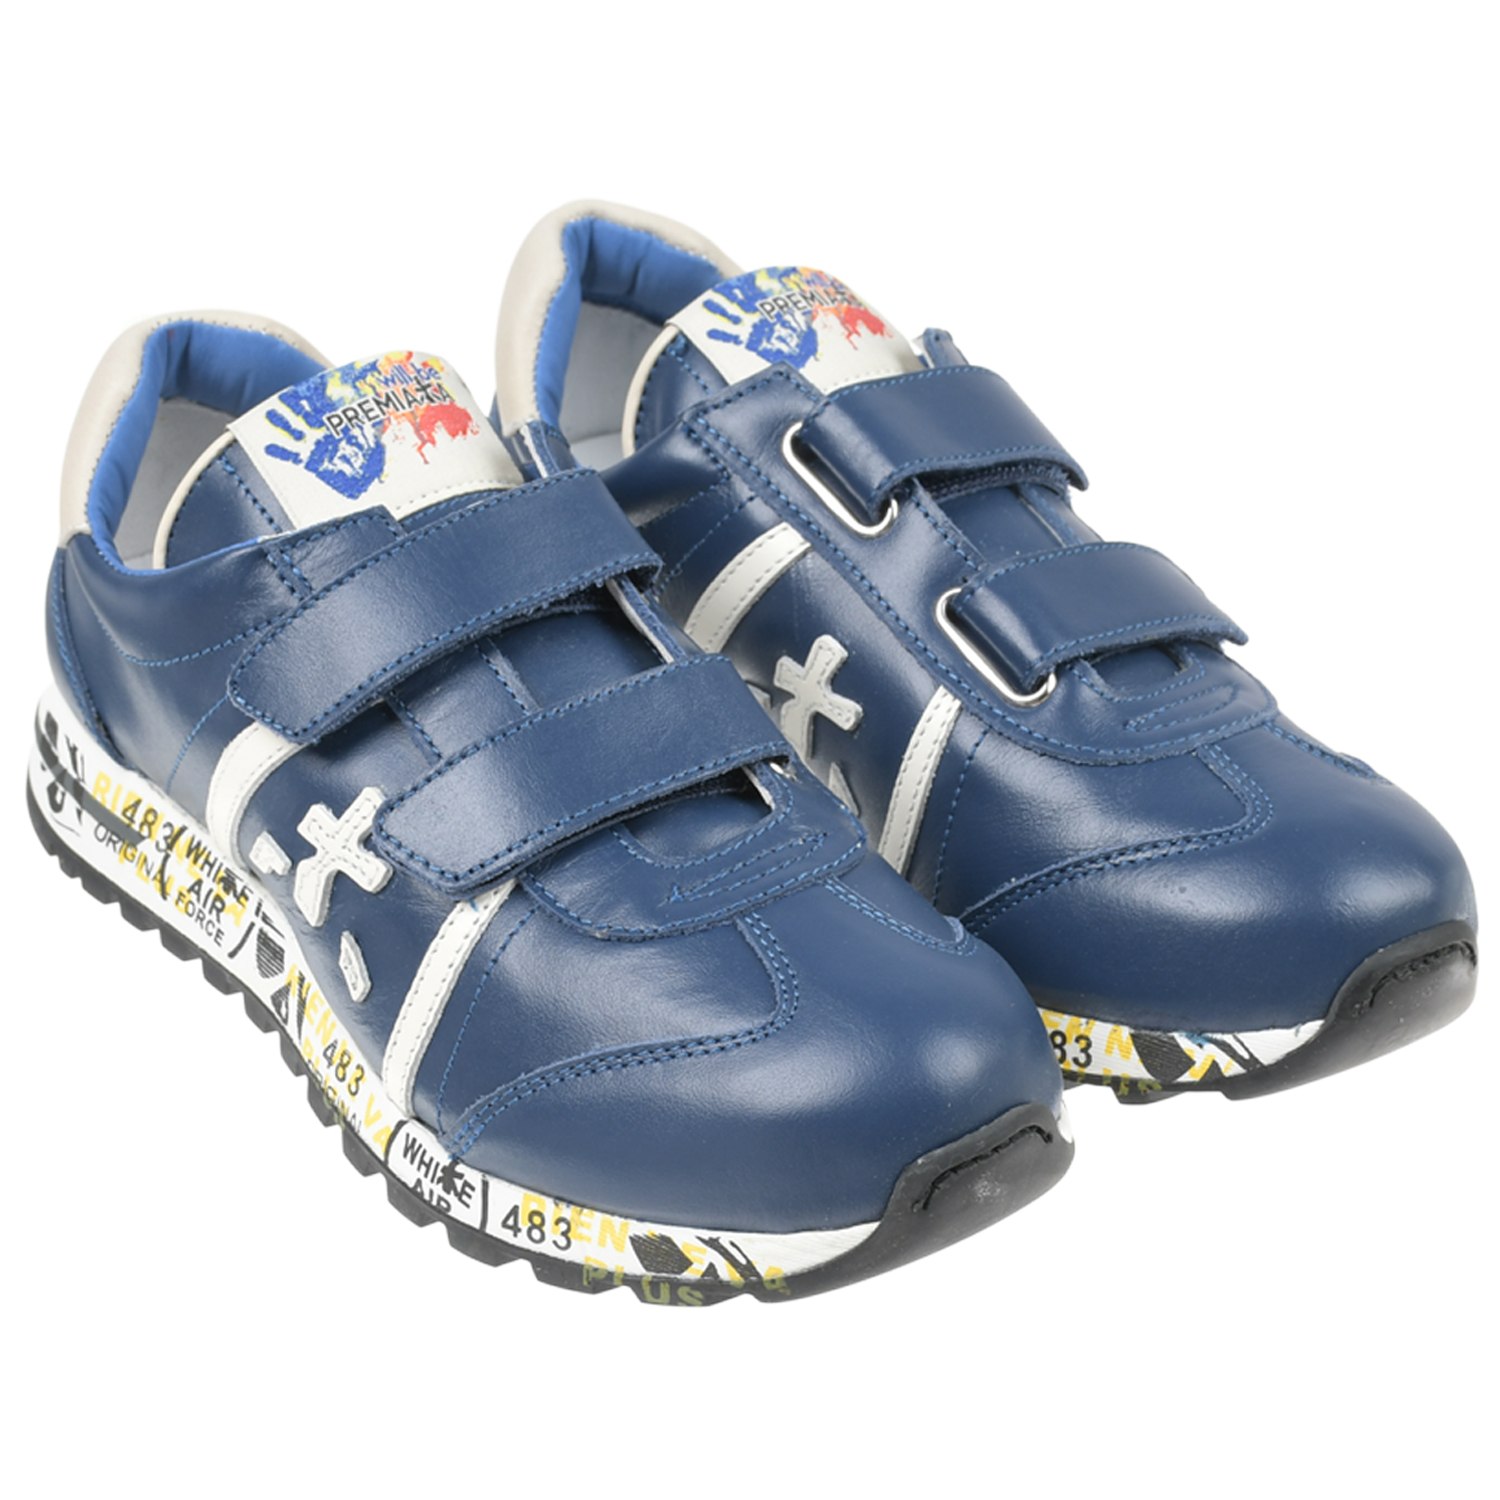 Темно-синие кроссовки с белыми вставками will be Premiata белые кроссовки geox для девочки 33